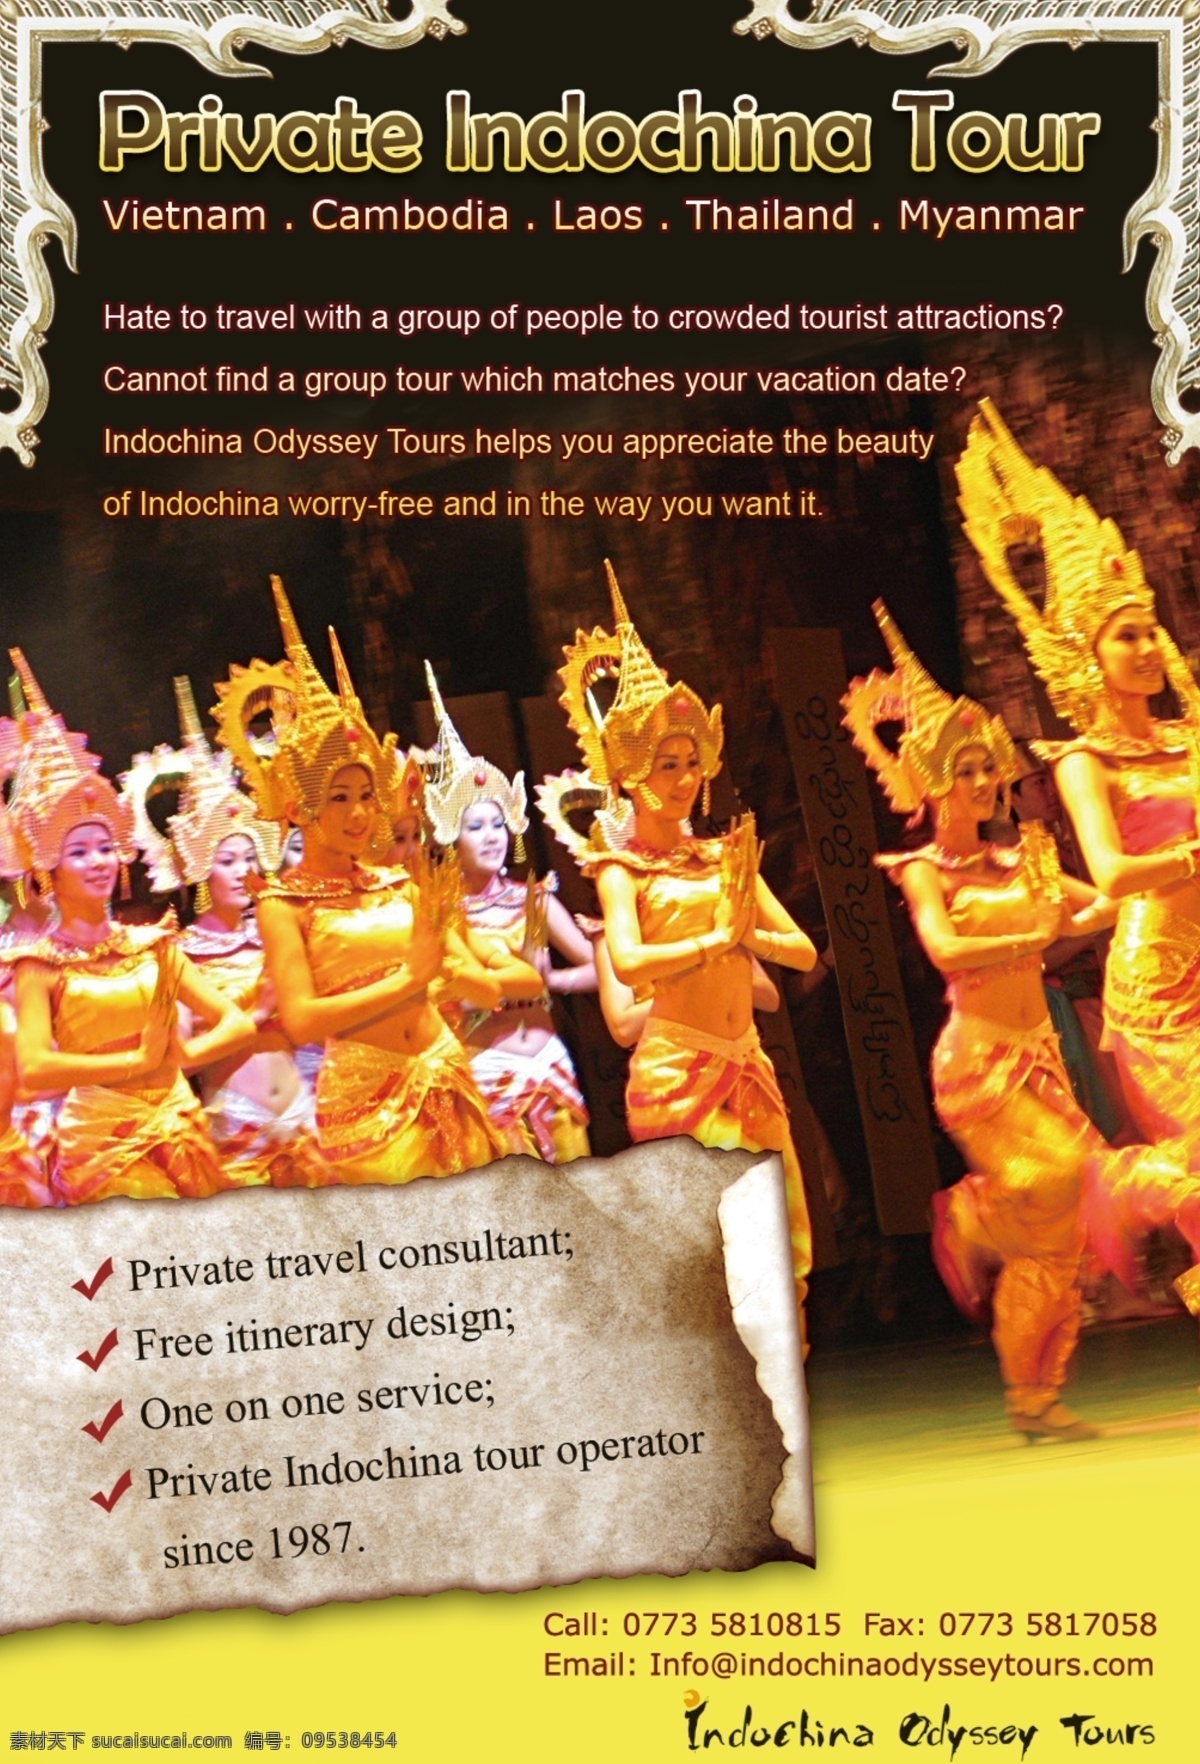 东南亚 旅游 广告 旅游广告 泰国 老挝 缅甸 泰国图案 泰国纹理 东南亚舞蹈 泰国舞 indochina tour 杂志广告 原创广告 广告设计模板 源文件